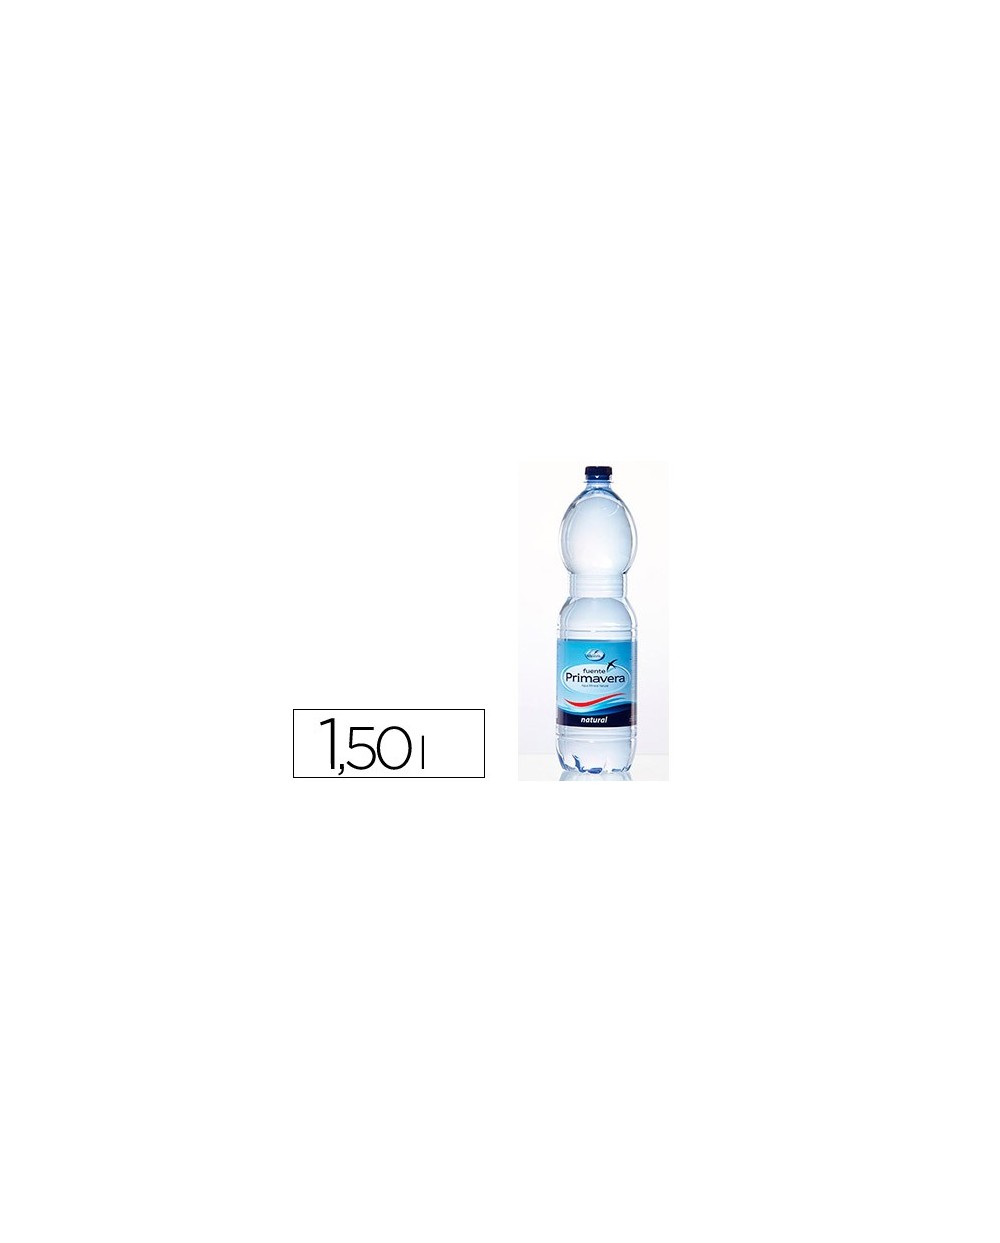 Agua mineral natural fuente primavera botella de 15 l